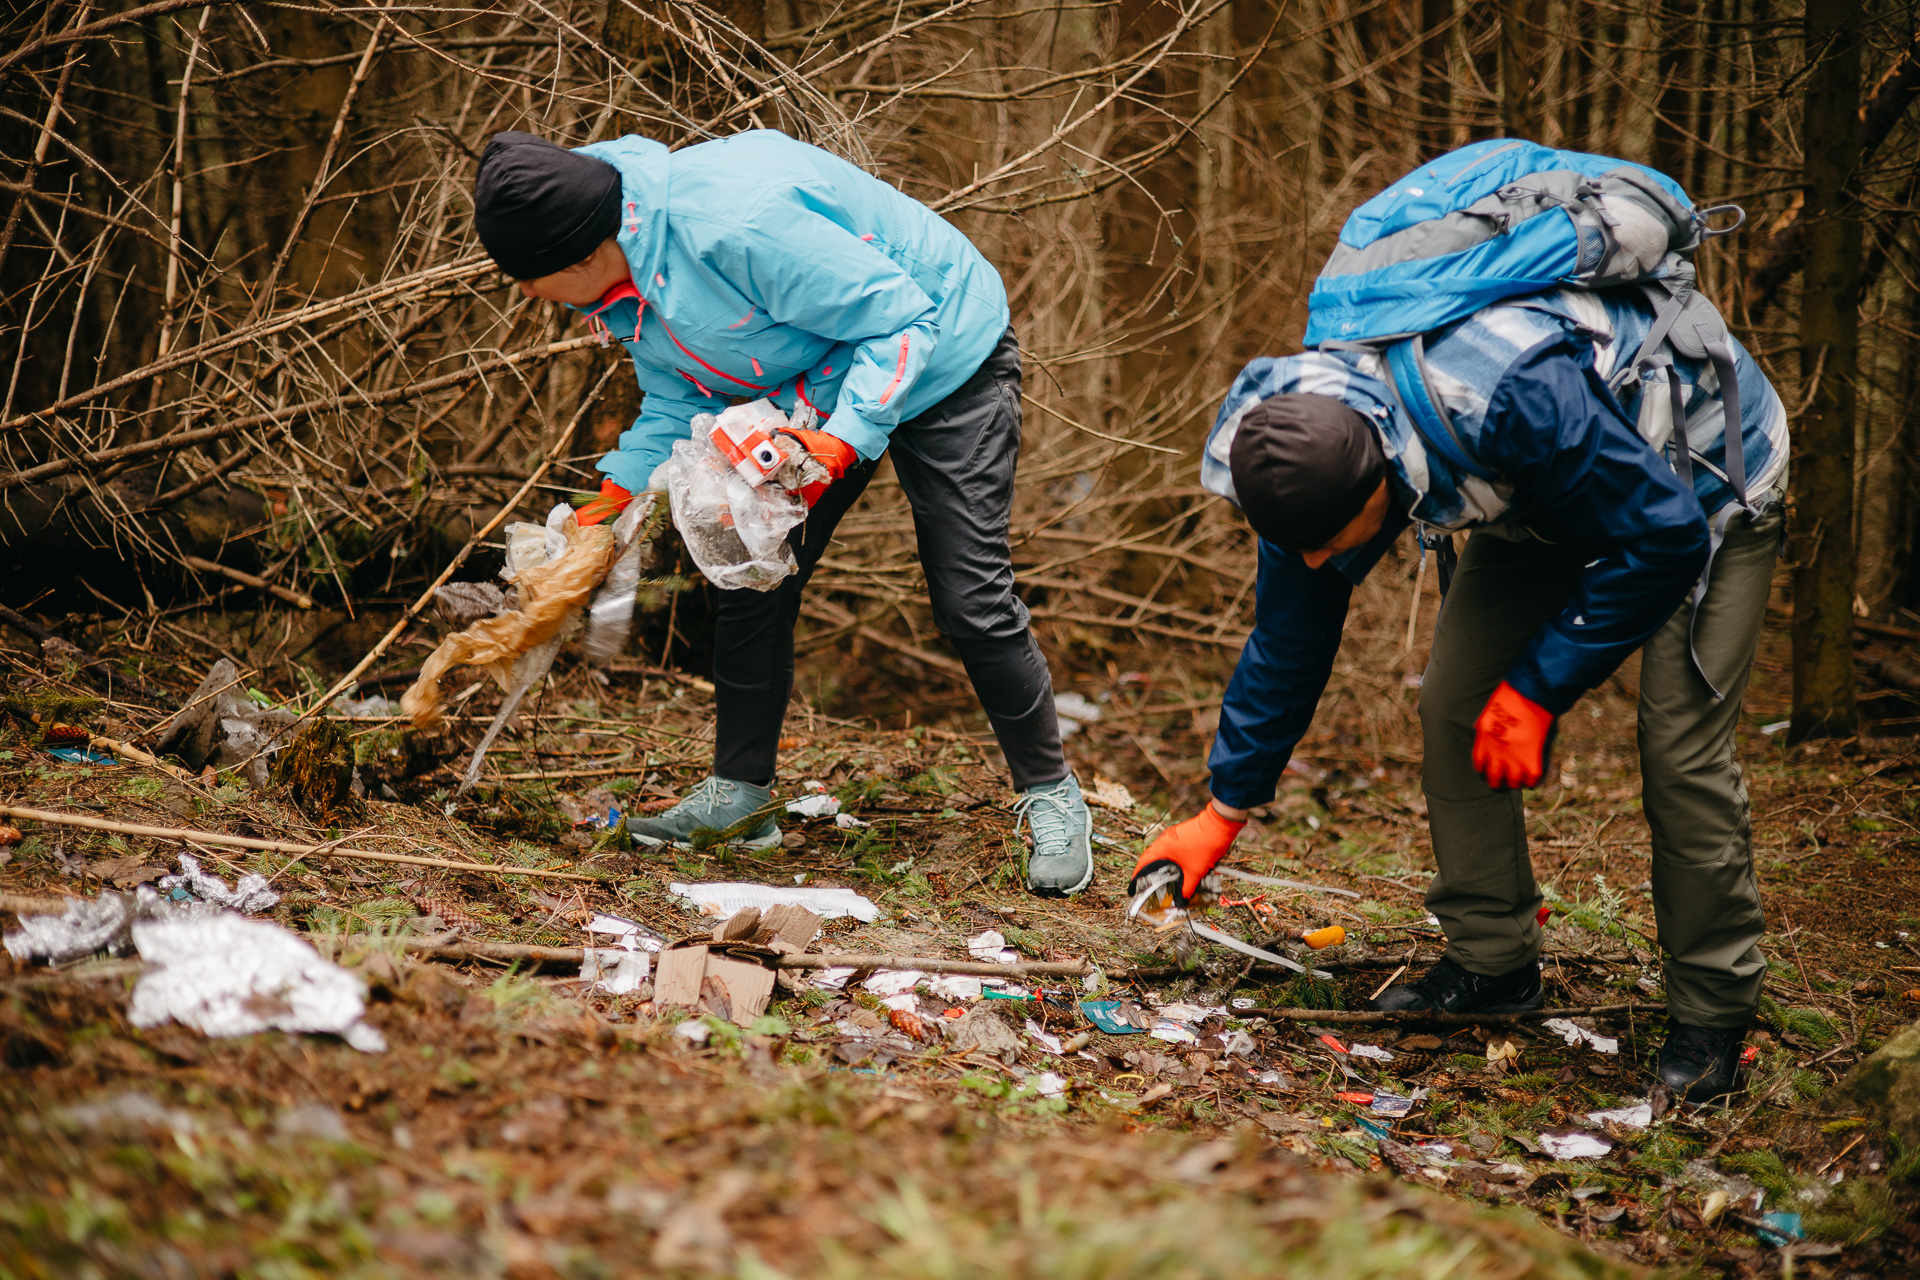 Ecologizare la Păltiniș: O tonă de gunoaie adunată de voluntari